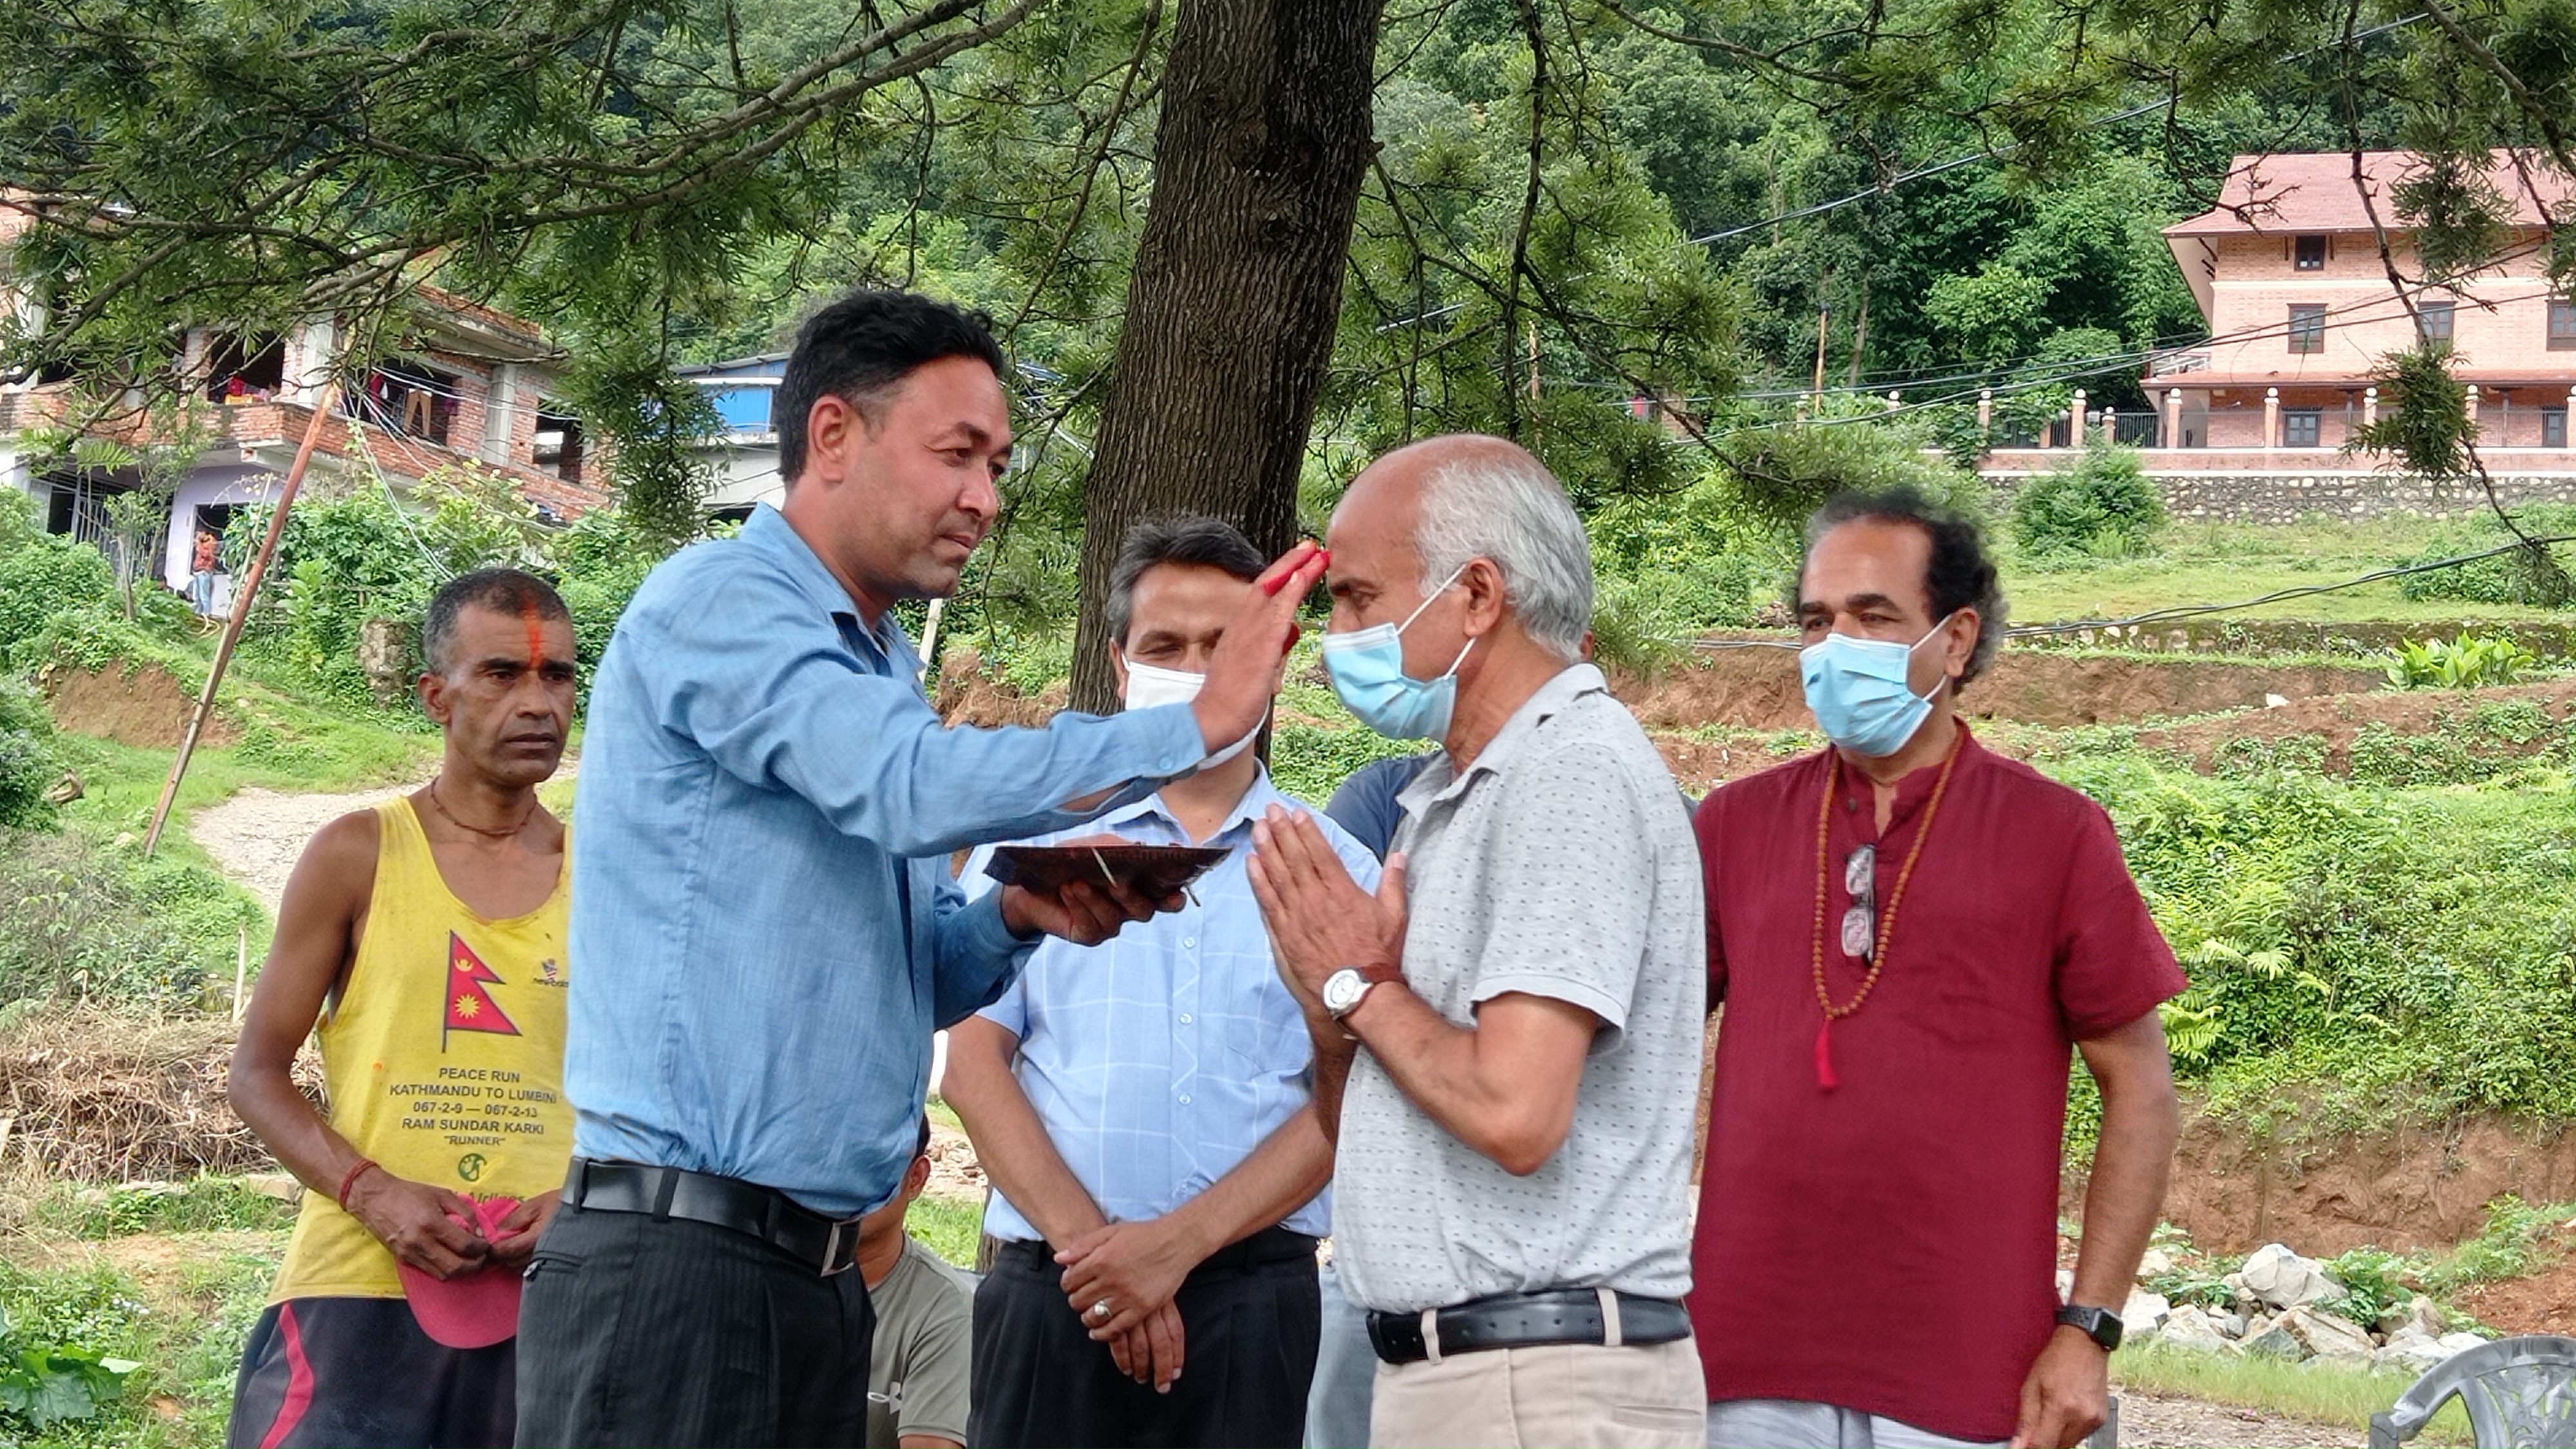 दलित समुदायका पुजारी लक्ष्मण रम्तेलको हातबाट टीका लगाउँदै डाक्टर गोविन्द केसी। तस्बिर: सबिना श्रेष्ठ/सेतोपाटी